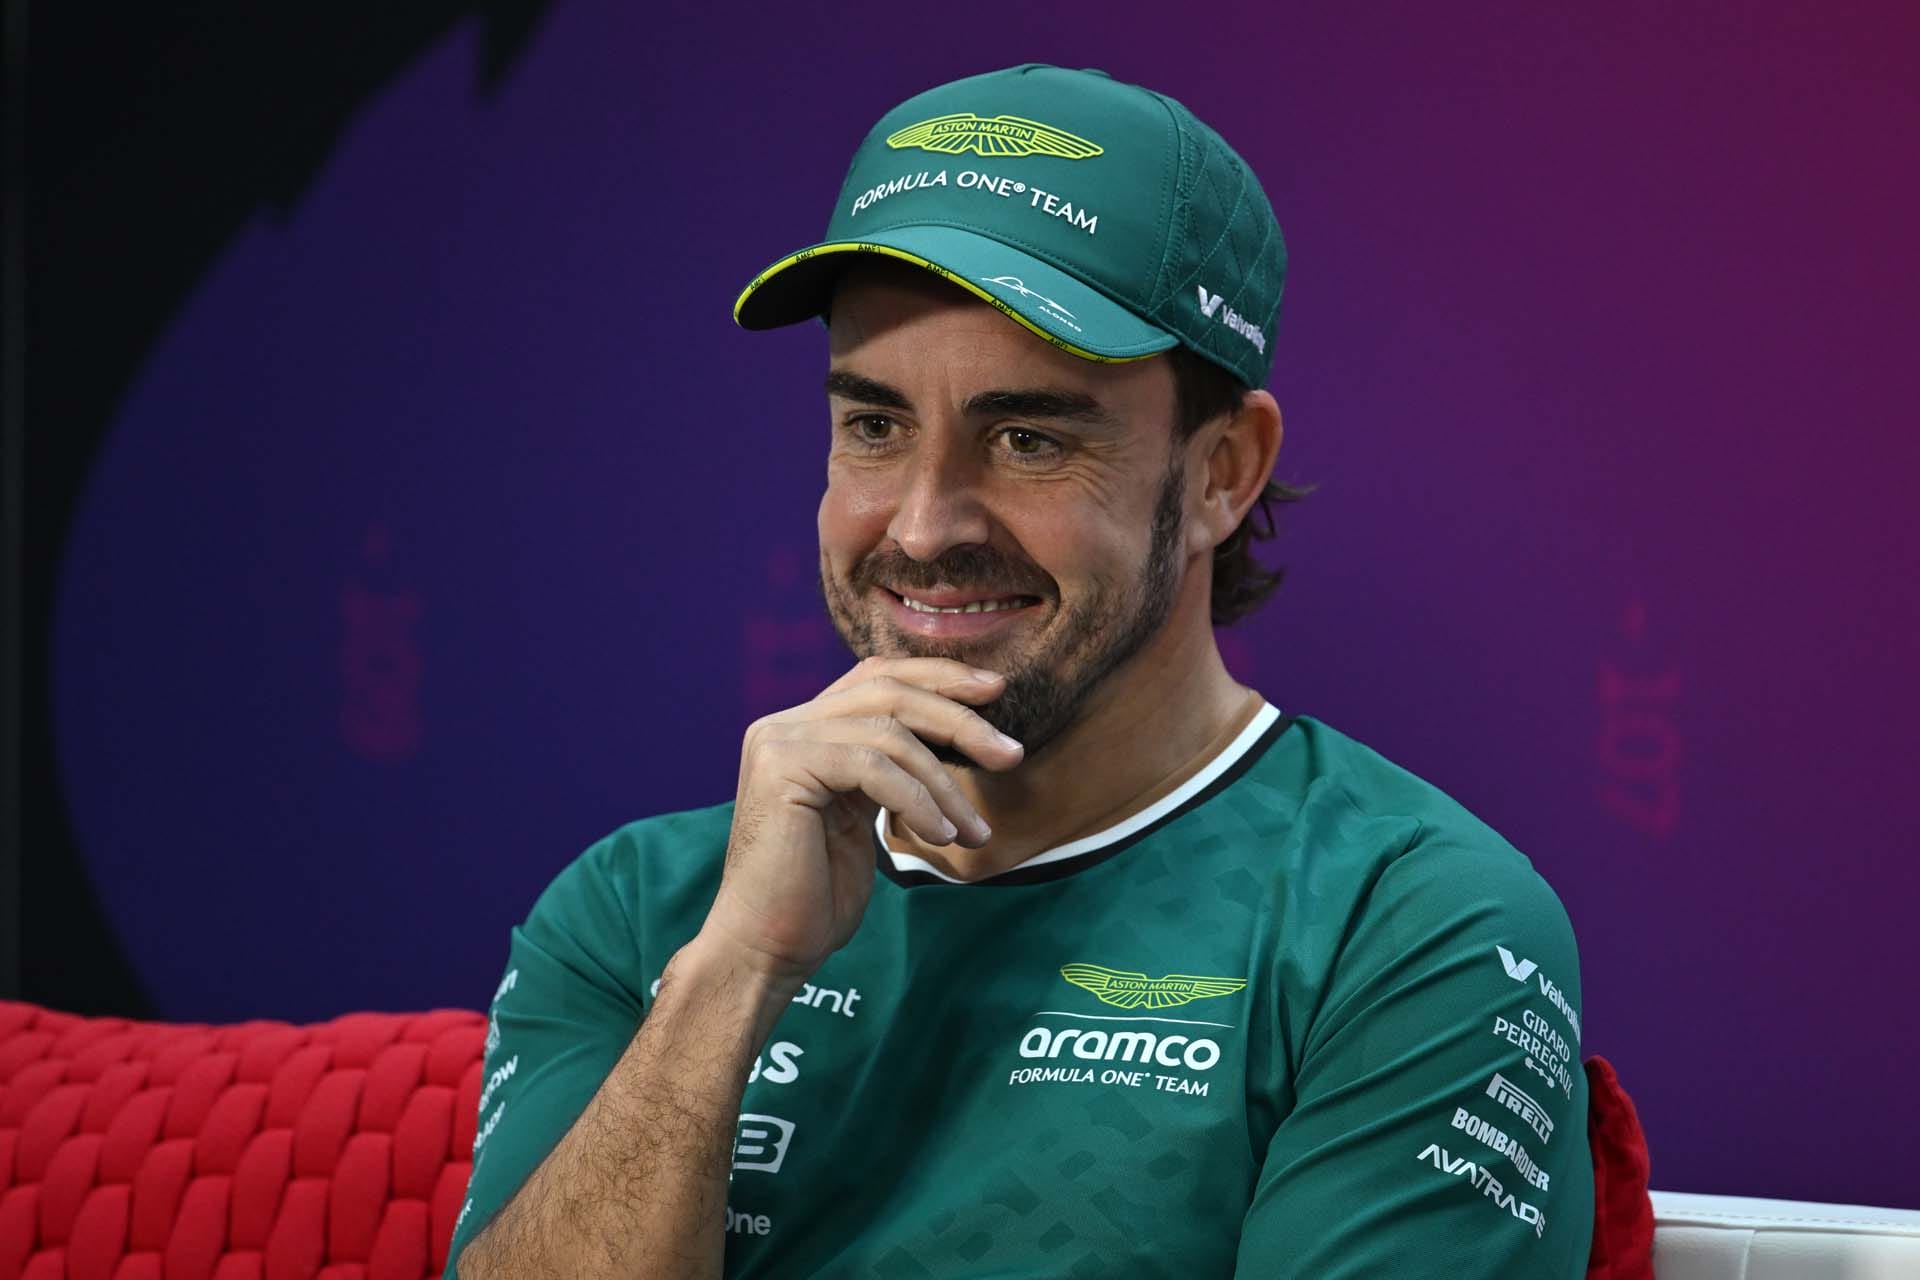 Aston Martin és Alonso: Egy életre szóló kapcsolat megszületett az F1 világában